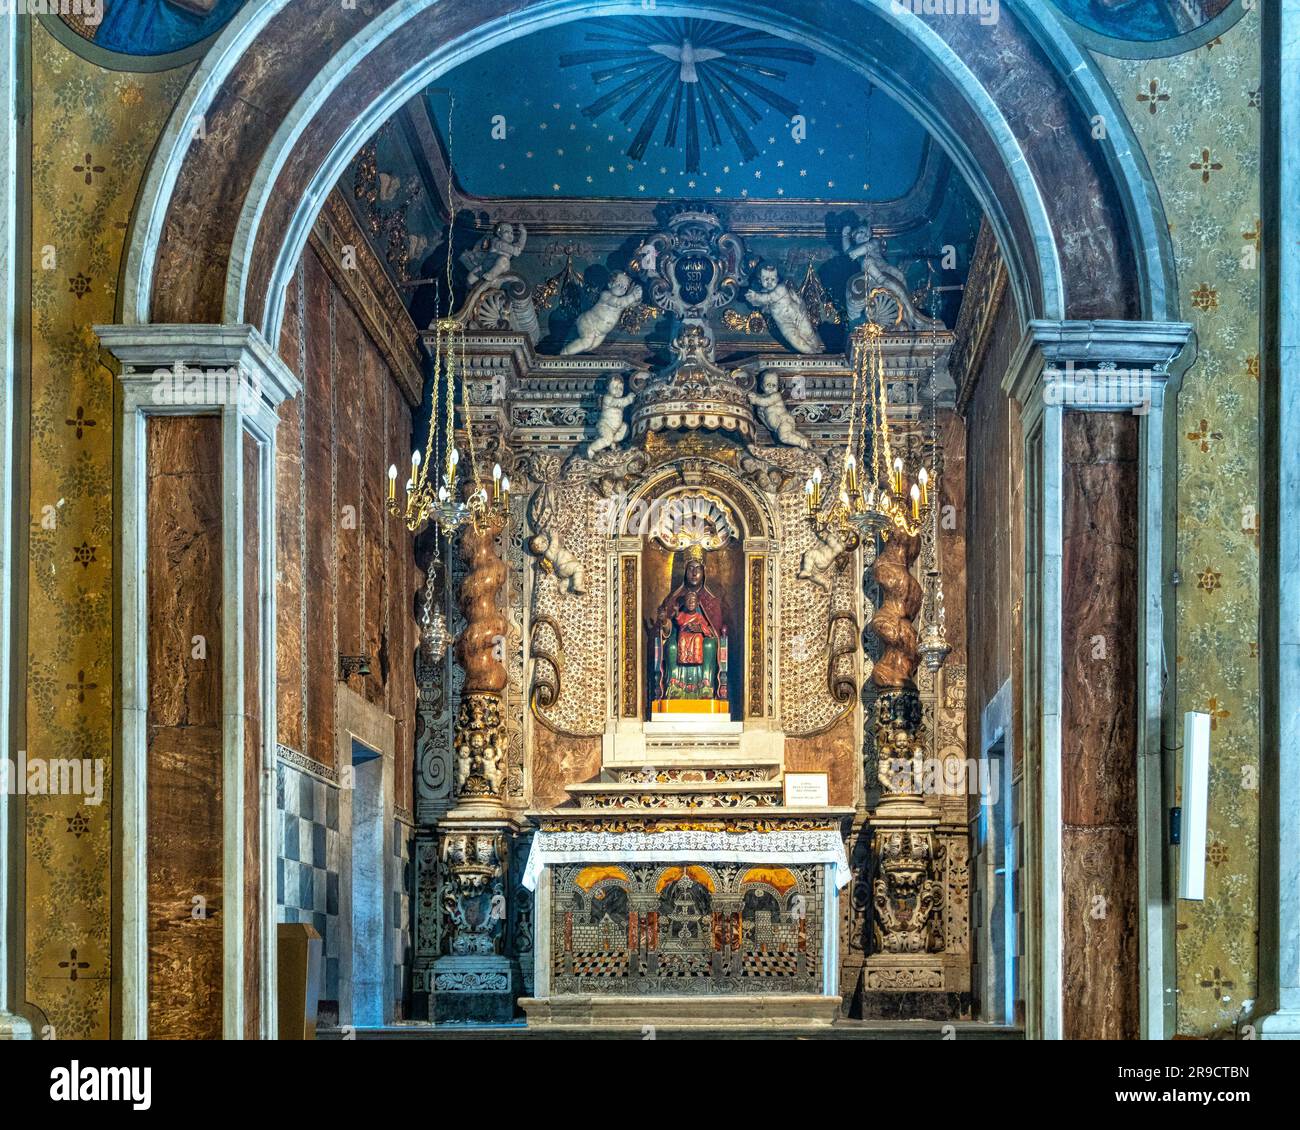 Der Altar ist reich verziert mit Mosaiken und verdrehten Säulen mit der Statue der Schwarzen Madonna im antiken Heiligtum von Tindari. Tindari, Sizilien Stockfoto